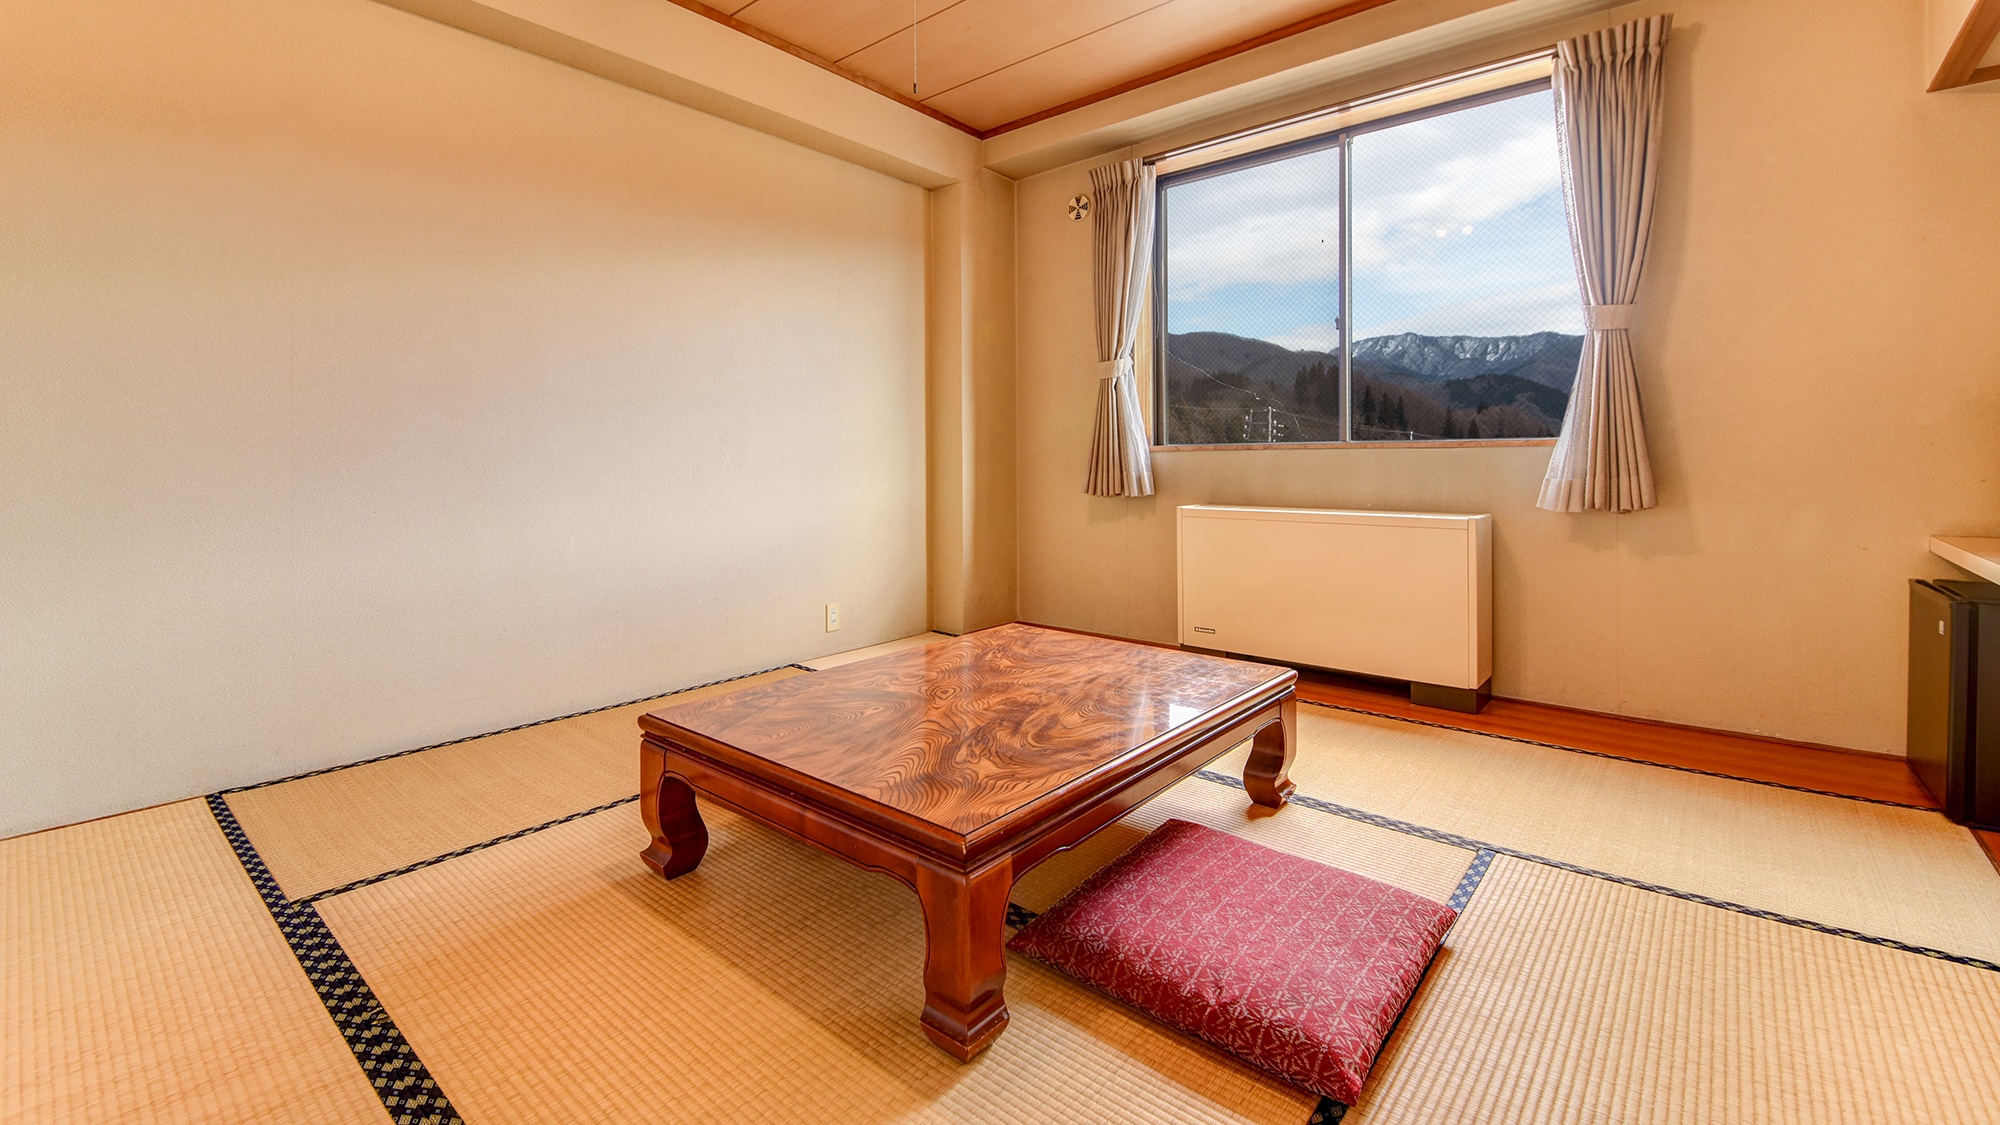 * ห้องสไตล์ญี่ปุ่นในอาคารหลัก / ห้องเสื่อทาทามิที่คุณสามารถเหยียดขาและผ่อนคลายได้ นอกจากนี้ยังแนะนำสำหรับครอบครัวที่มีเด็กเล็ก